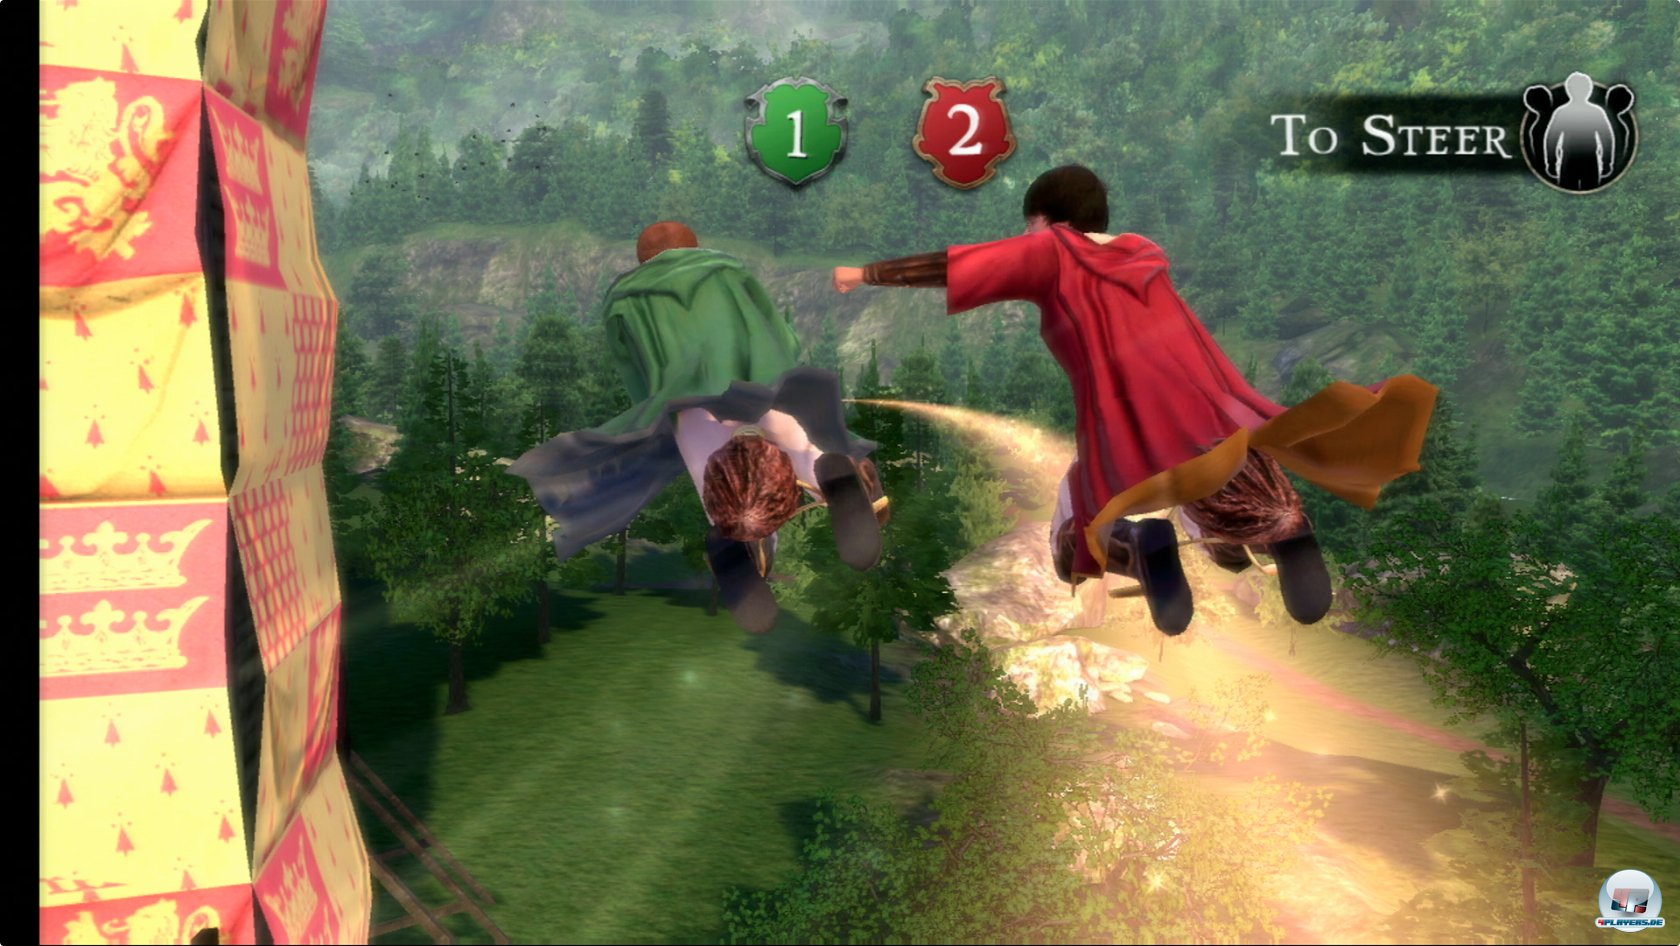 Beim Quidditch wird boxend und tretend um die Wette geflogen.